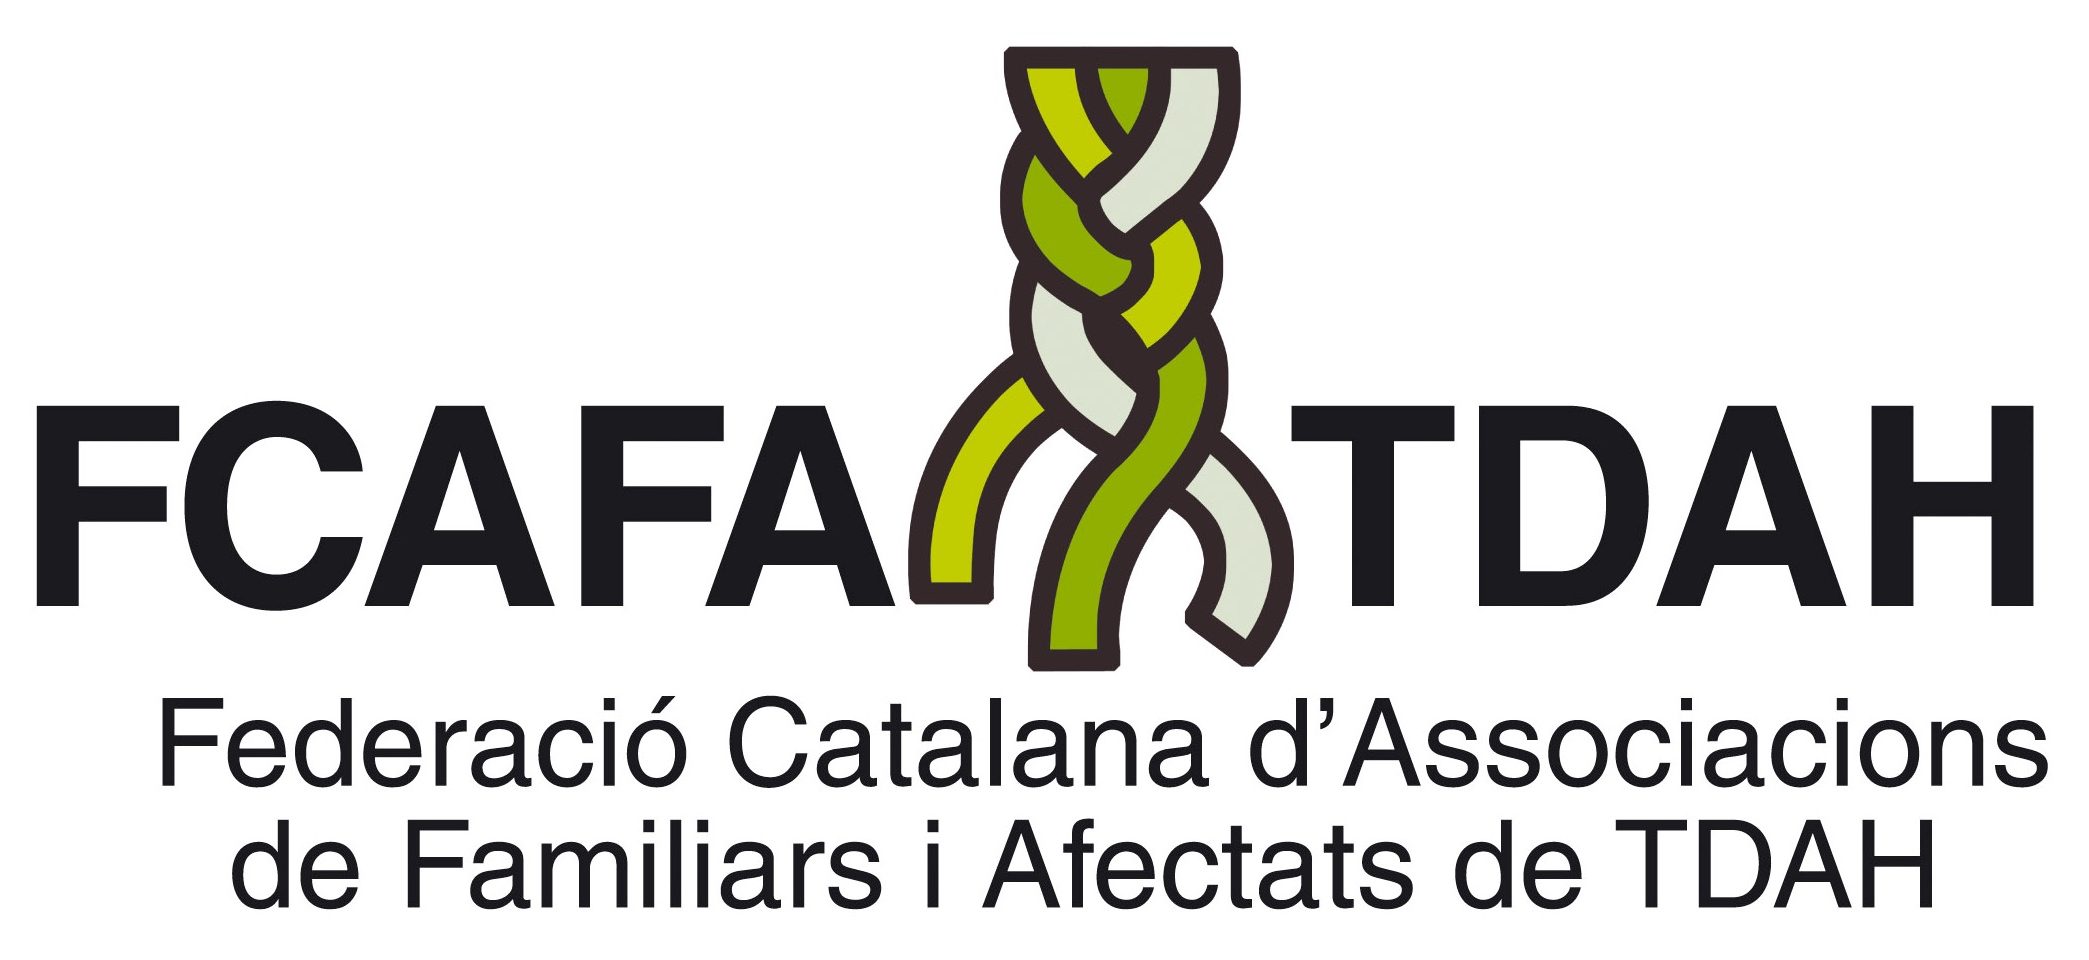 Federació Catalana d'Associacions de Familiars i Afectats de tdah